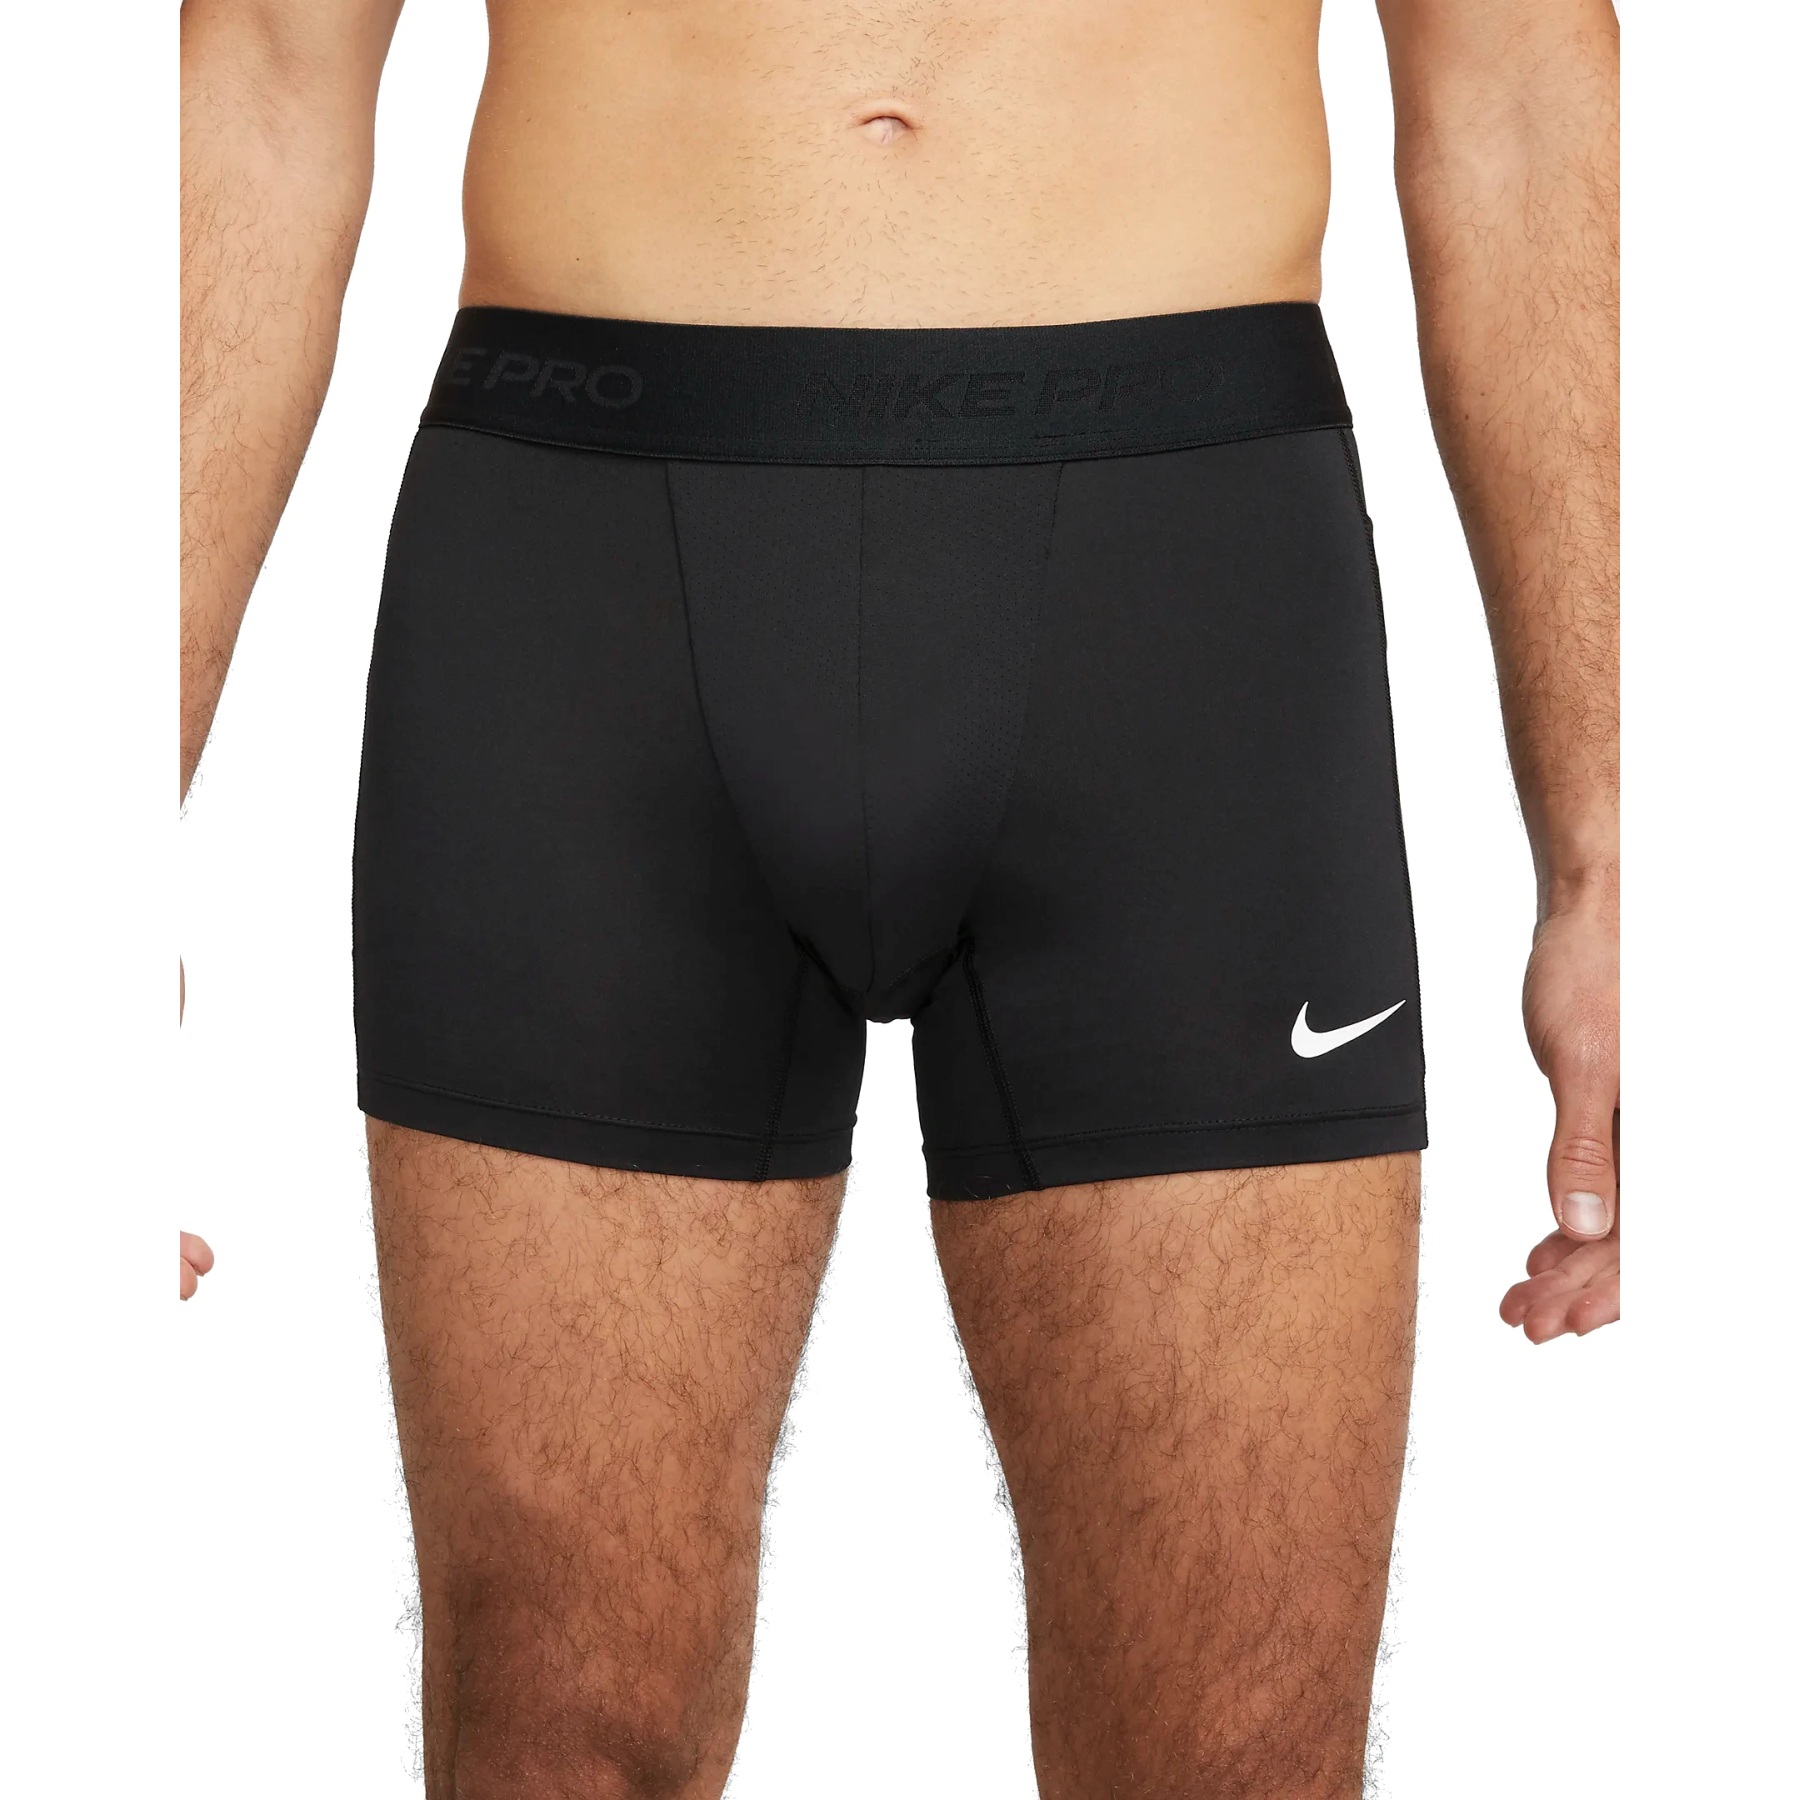 Immagine di Nike Pantaloncini Uomo - Pro Dri-FIT - nero/bianco FD0685-010